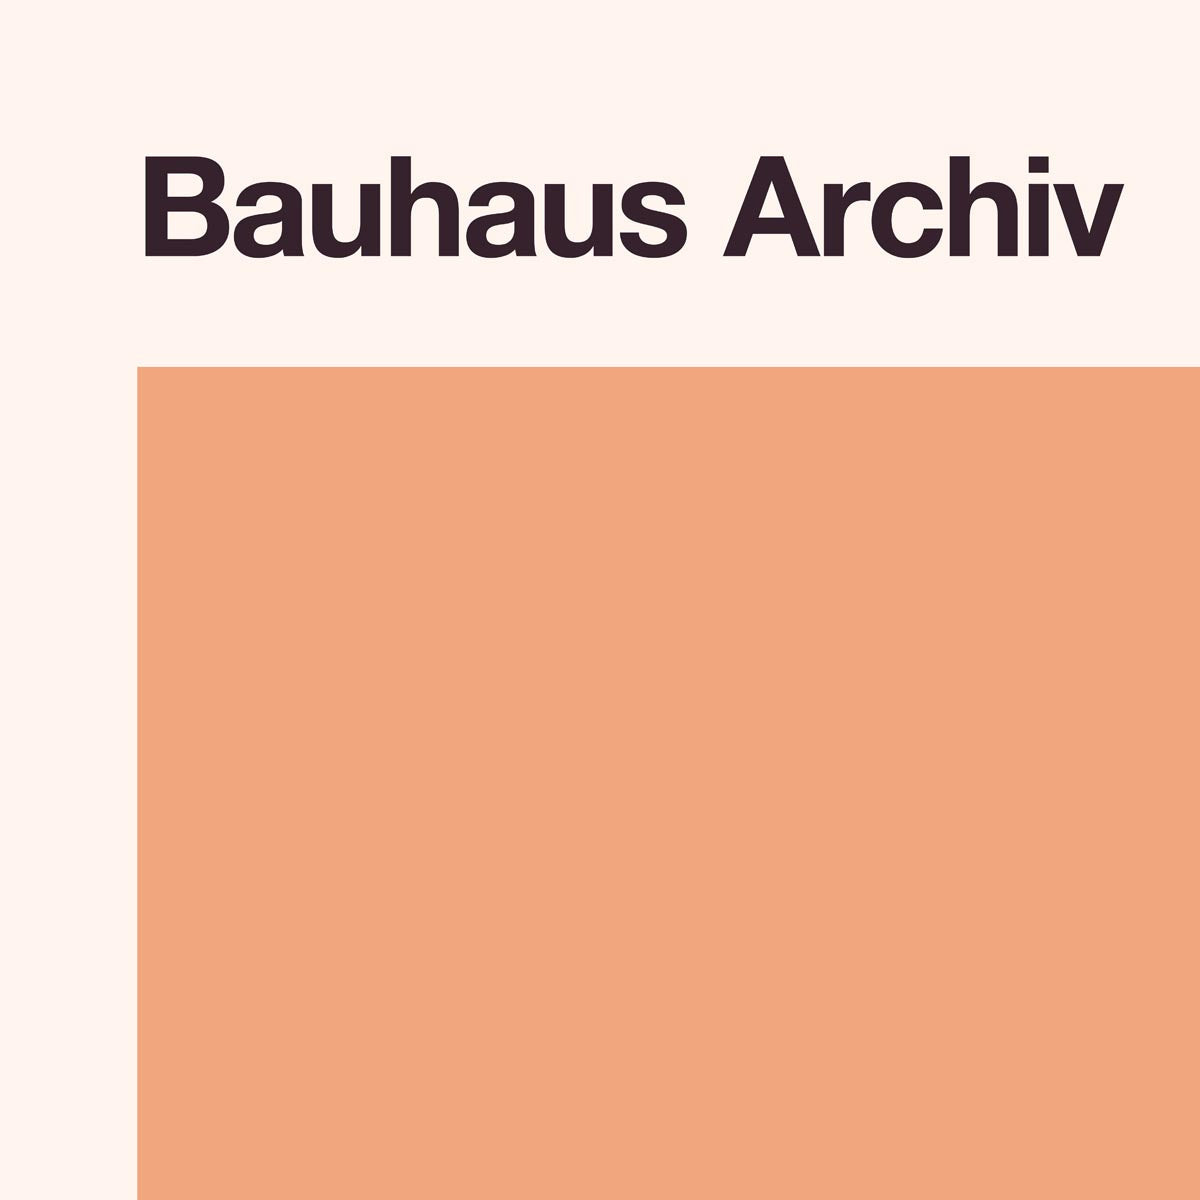 Bauhaus Archiv by Florant Bodart